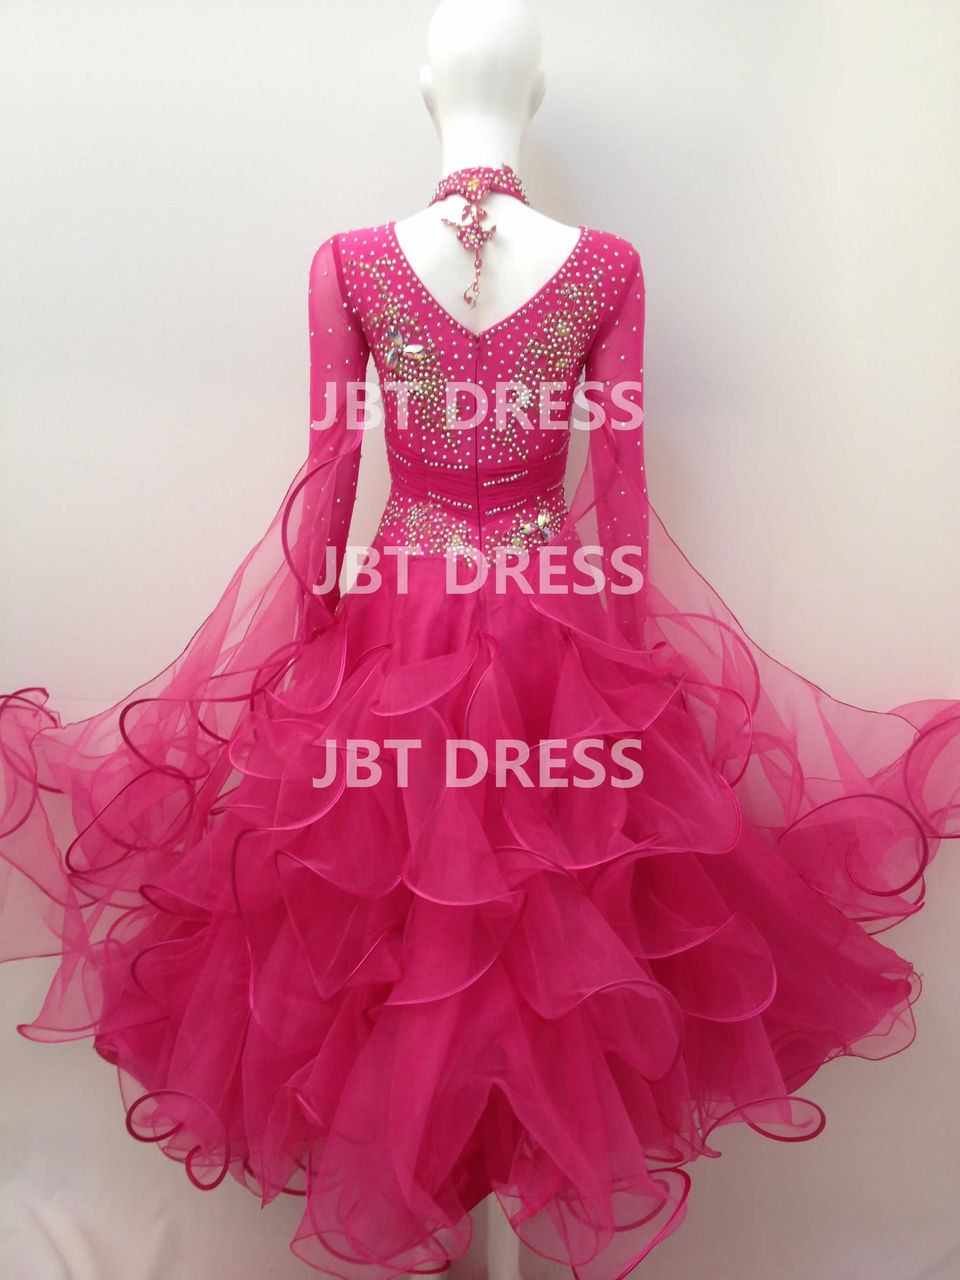 社交ダンスドレス : 社交ダンスドレスメーカー-JBT DRESS